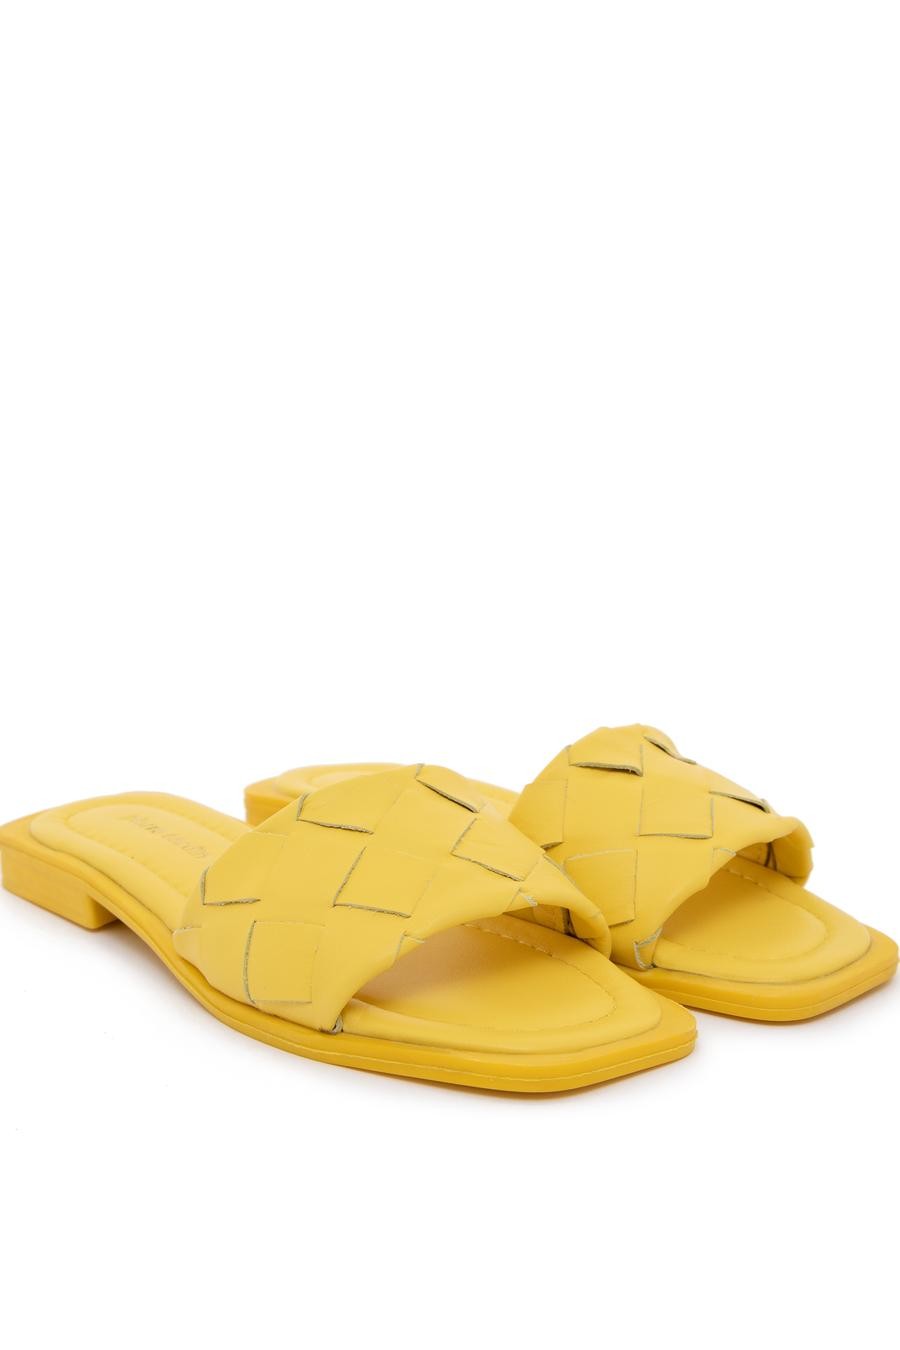 کفش  زرد  استاندارد  زنانه  پیرکاردین